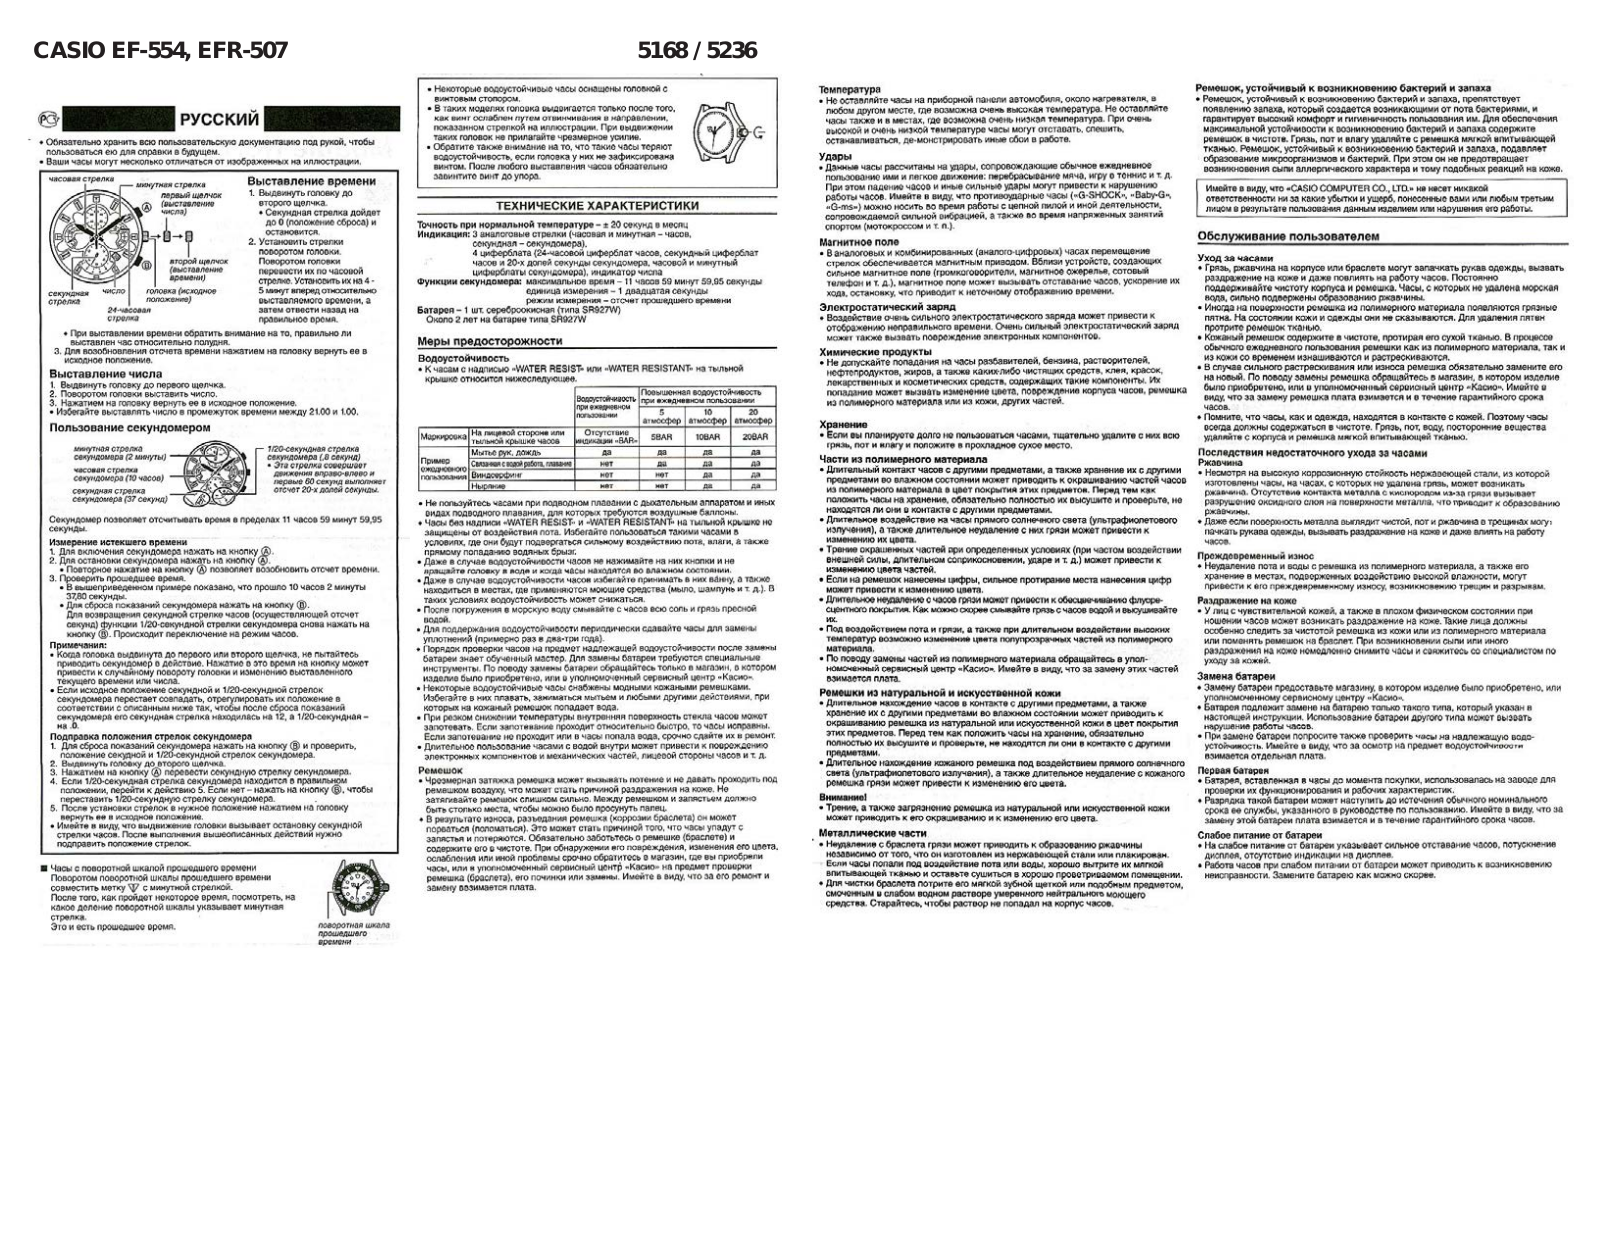 Casio EFR-507 User Manual